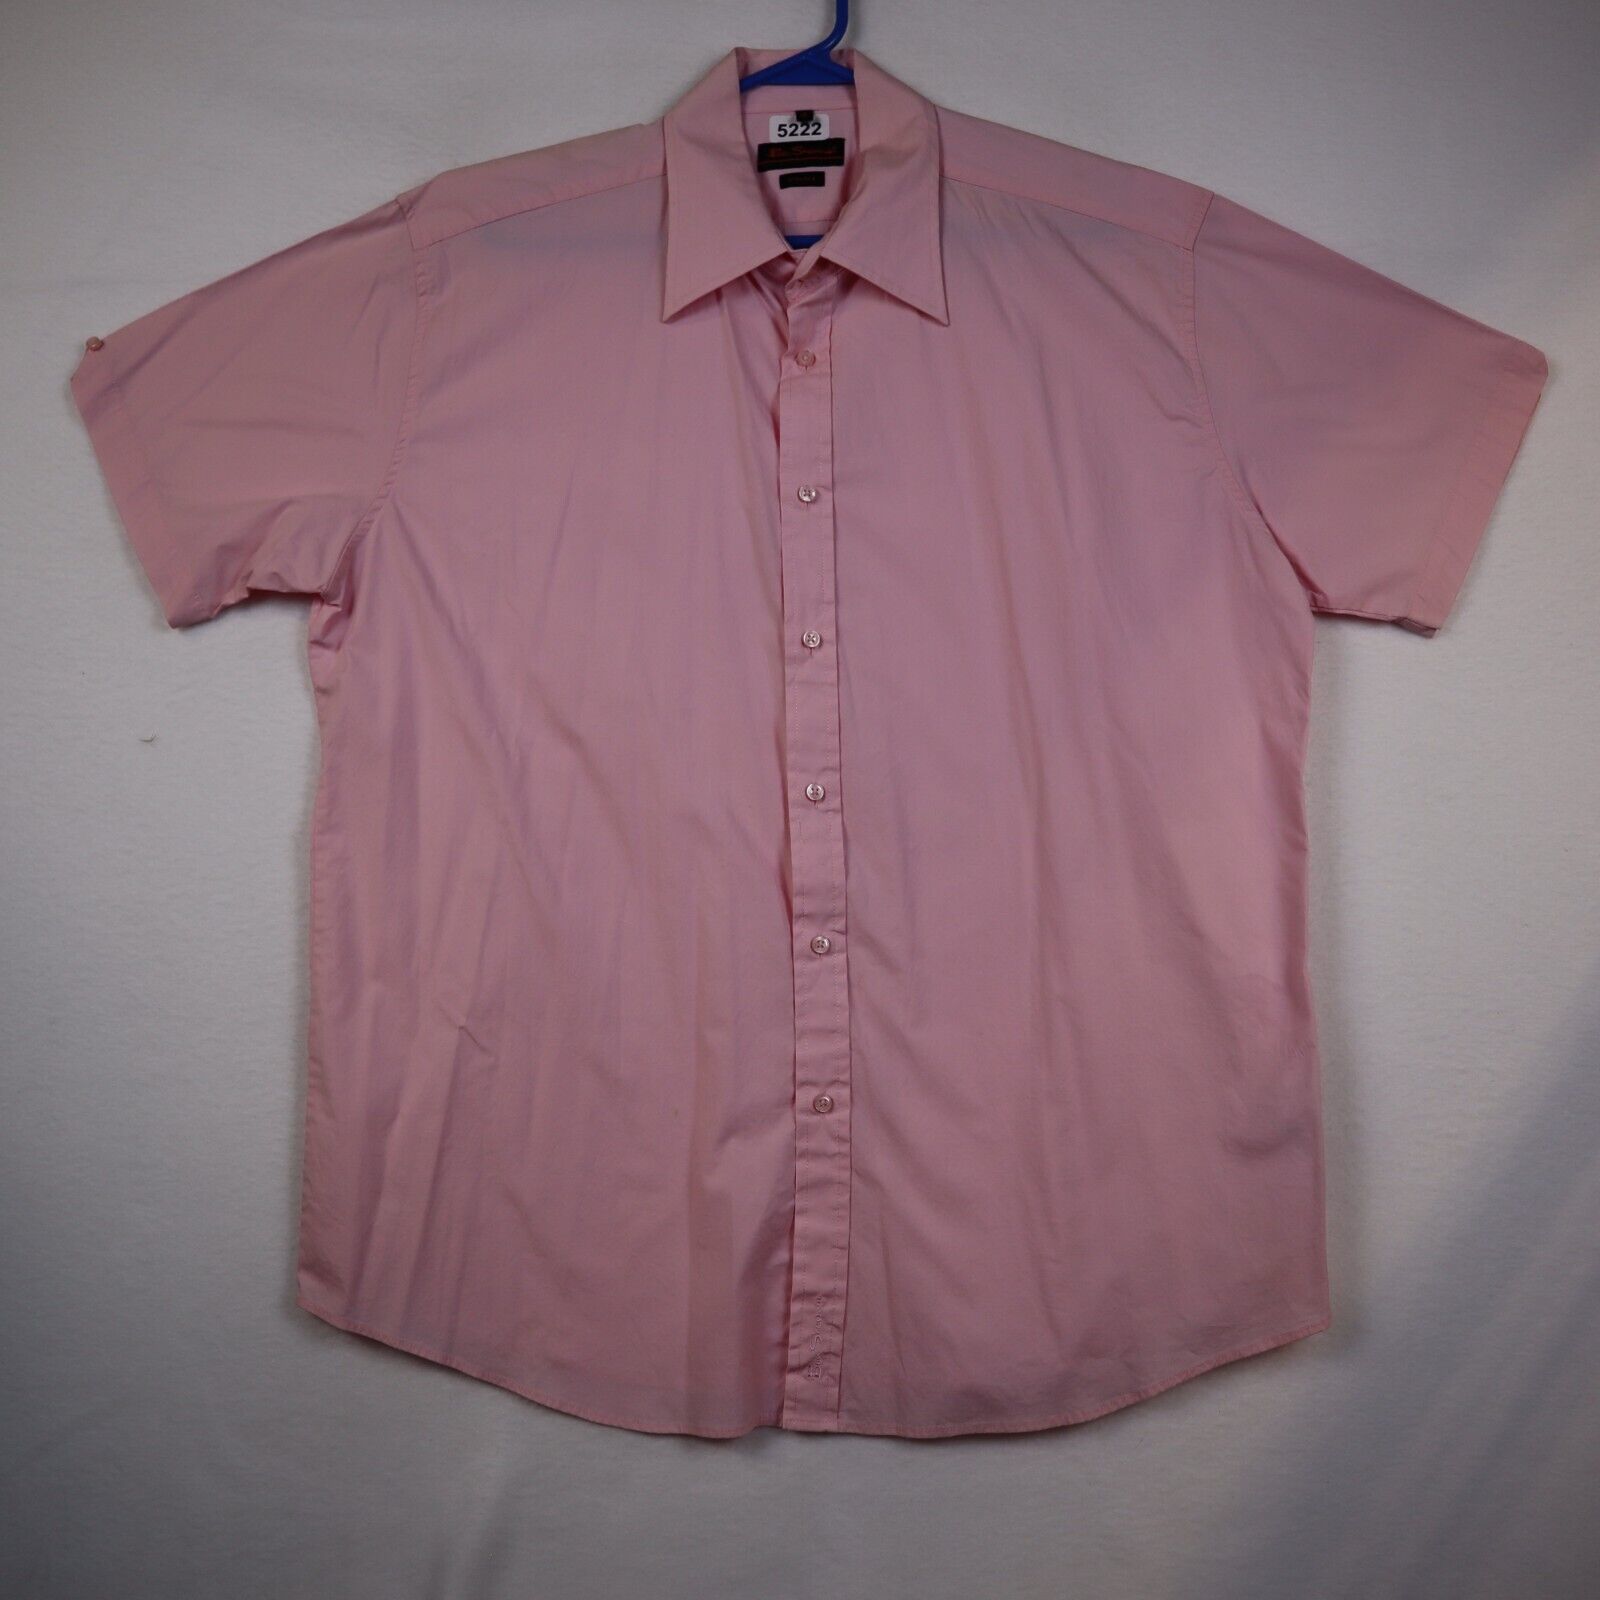 Ben Sherman button down dress shirt adult xl mens classic fit pink short sleeve